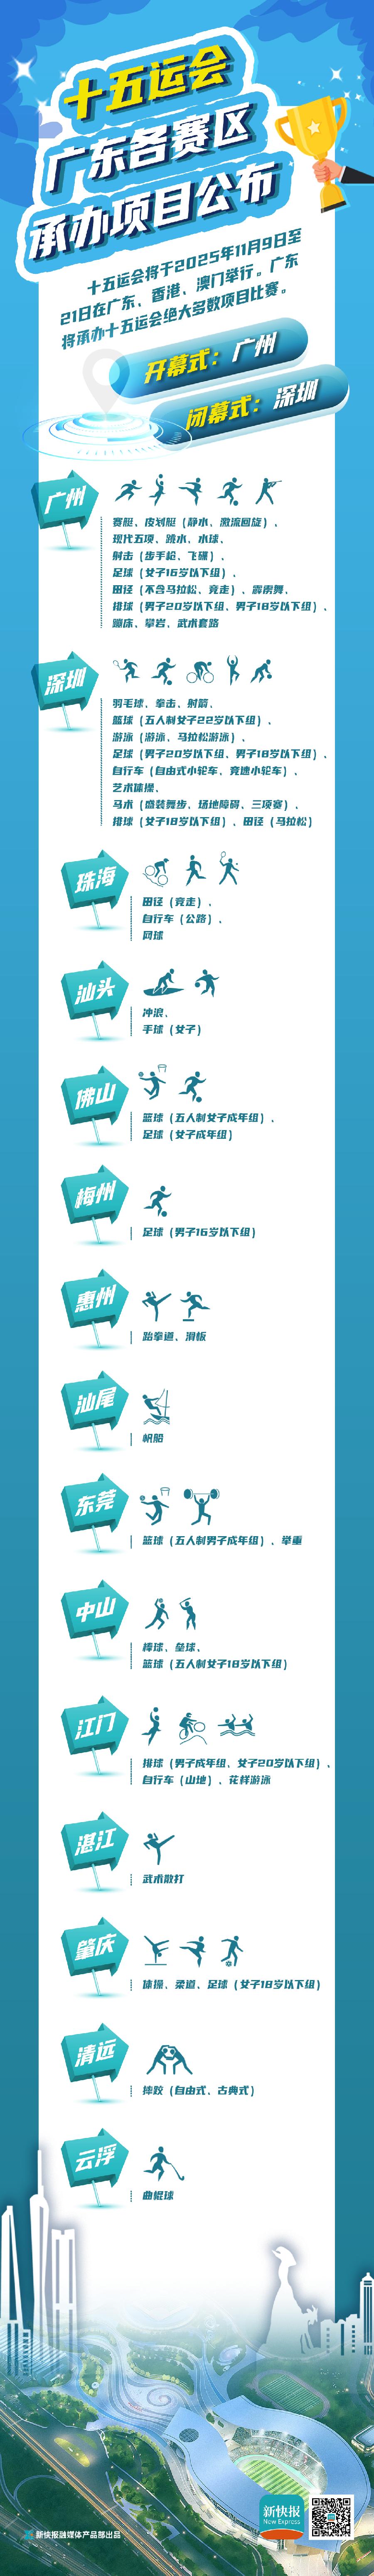 羊城办跳水羽毛球在深圳，十五运广东各赛区承办项目表请收好